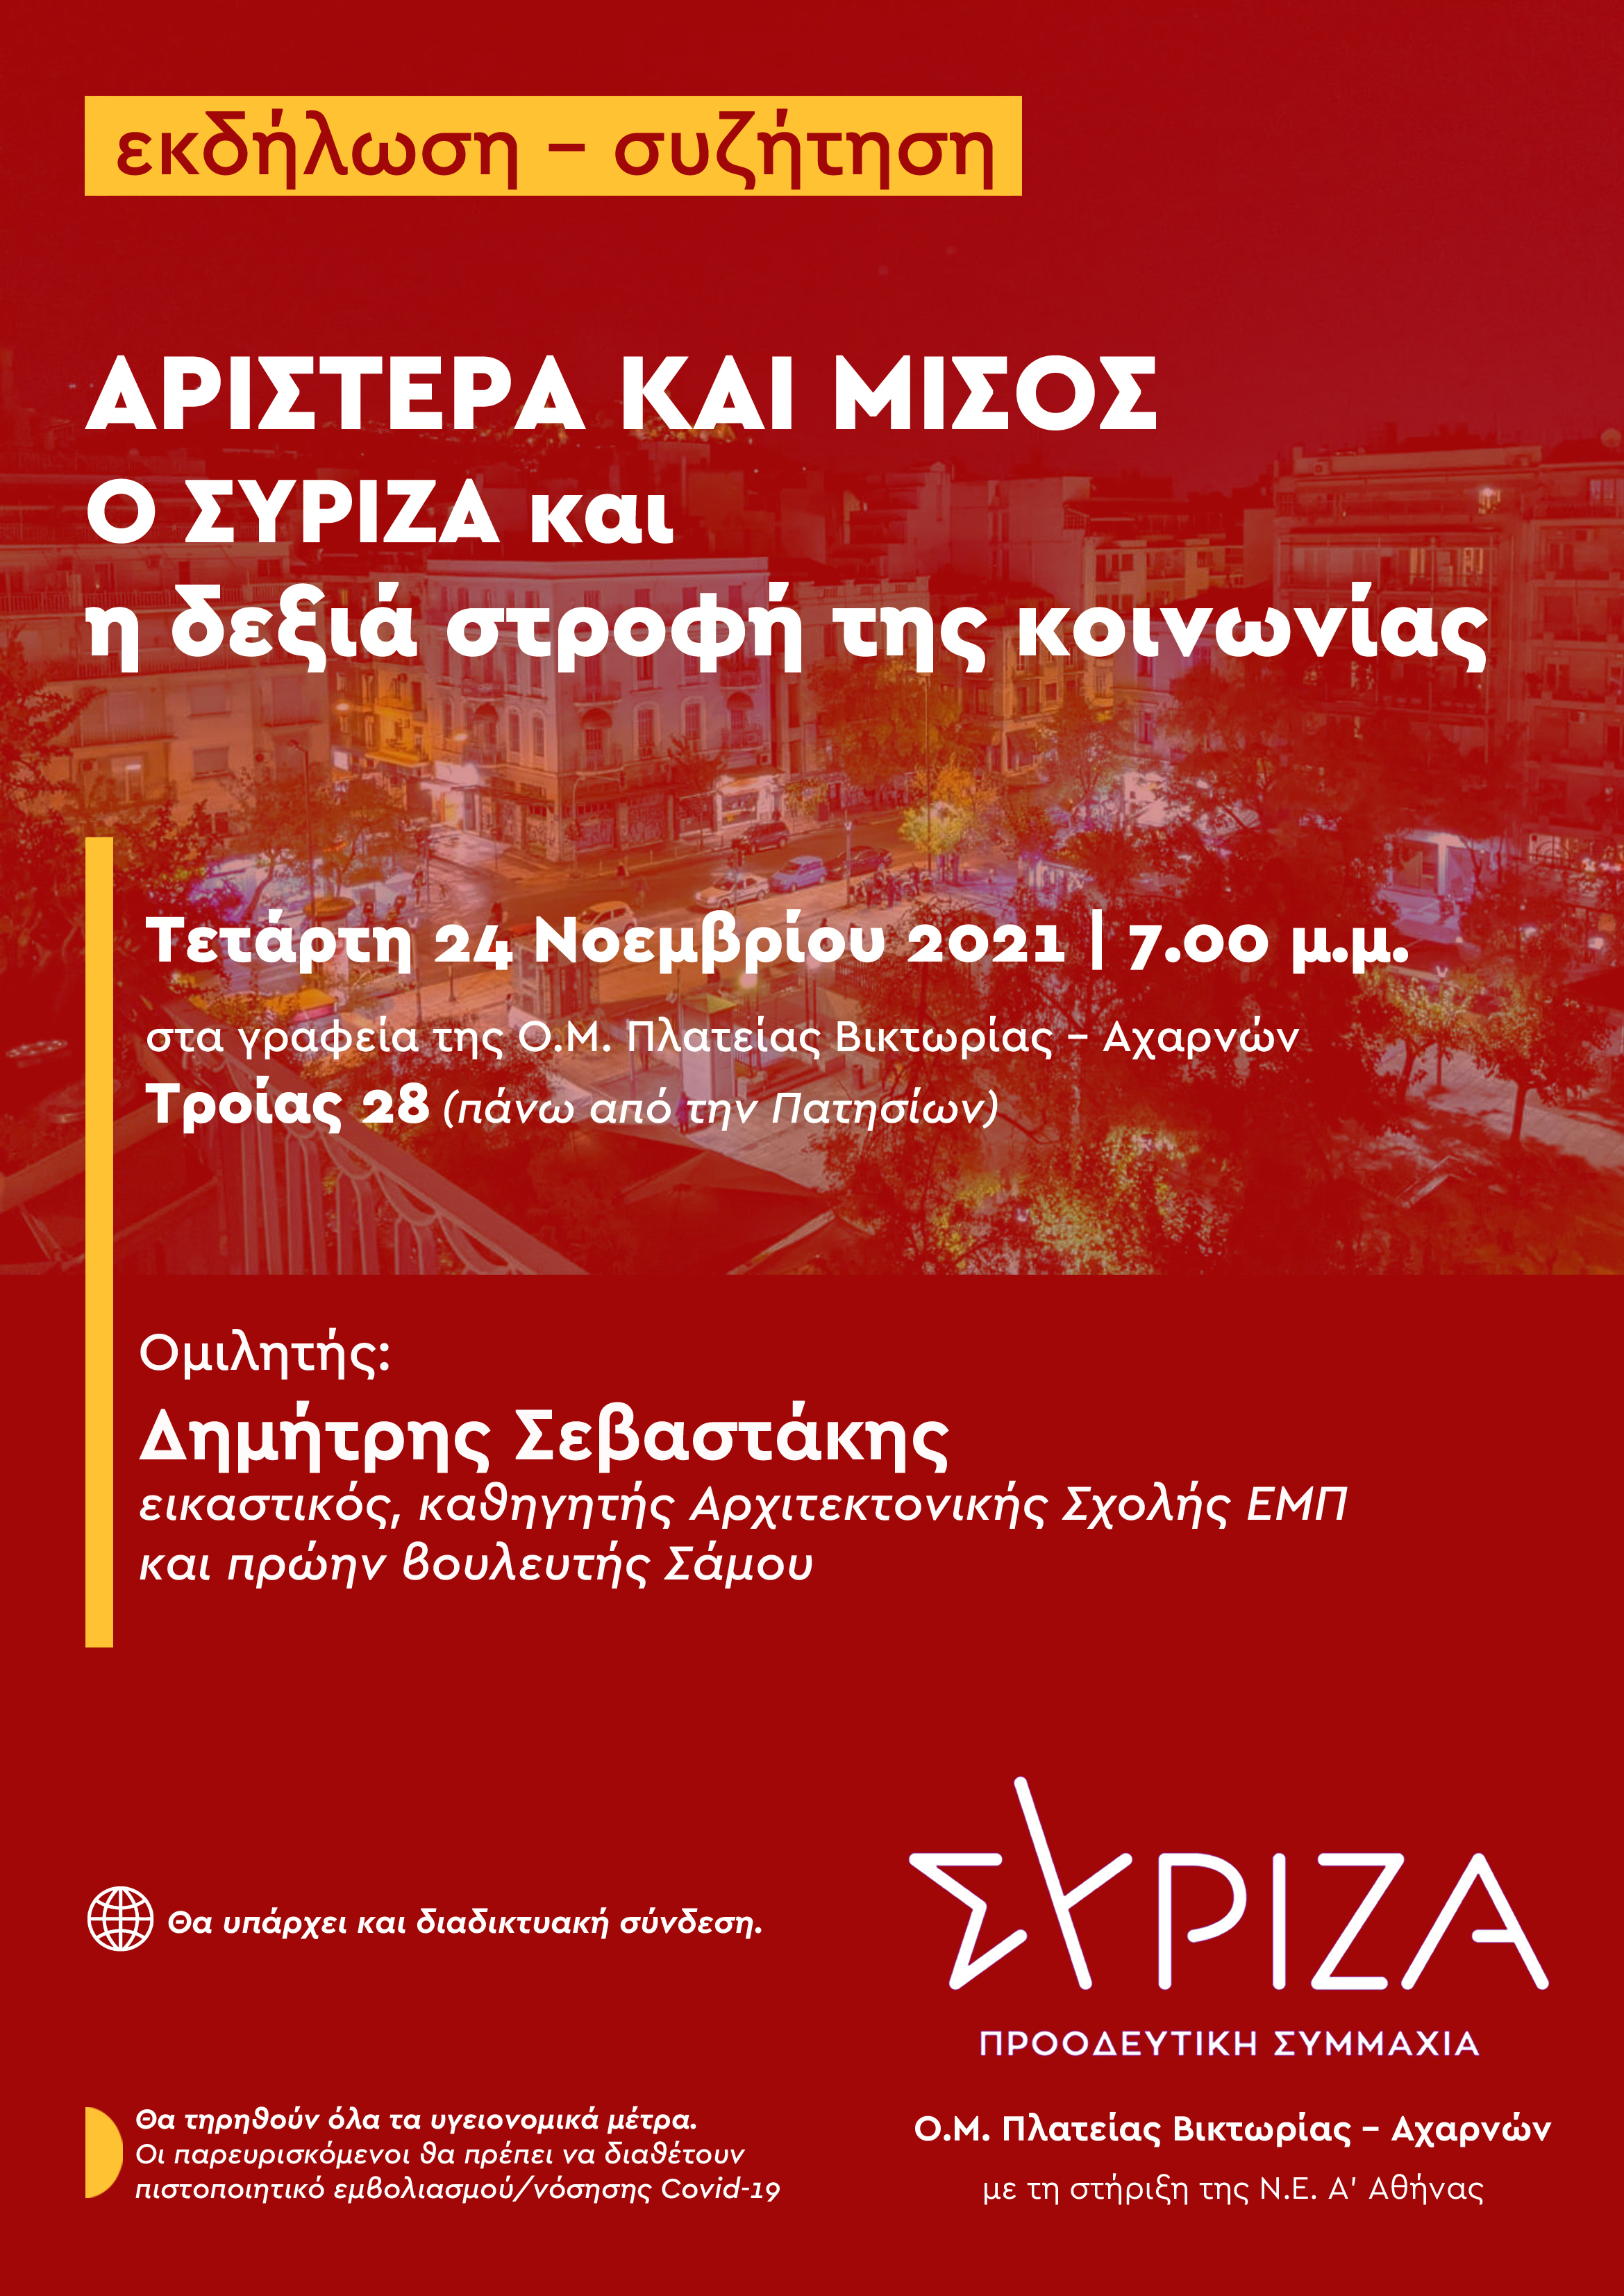 Εκδήλωση-συζήτηση της OM ΣΥΡΙΖΑ-ΠΣ Πλ. Βικτωρίας-Αχαρνών με τον Δ. Σεβαστάκη: «Αριστερά και μίσος. Ο ΣΥΡΙΖΑ και η δεξιά στροφή της κοινωνίας»